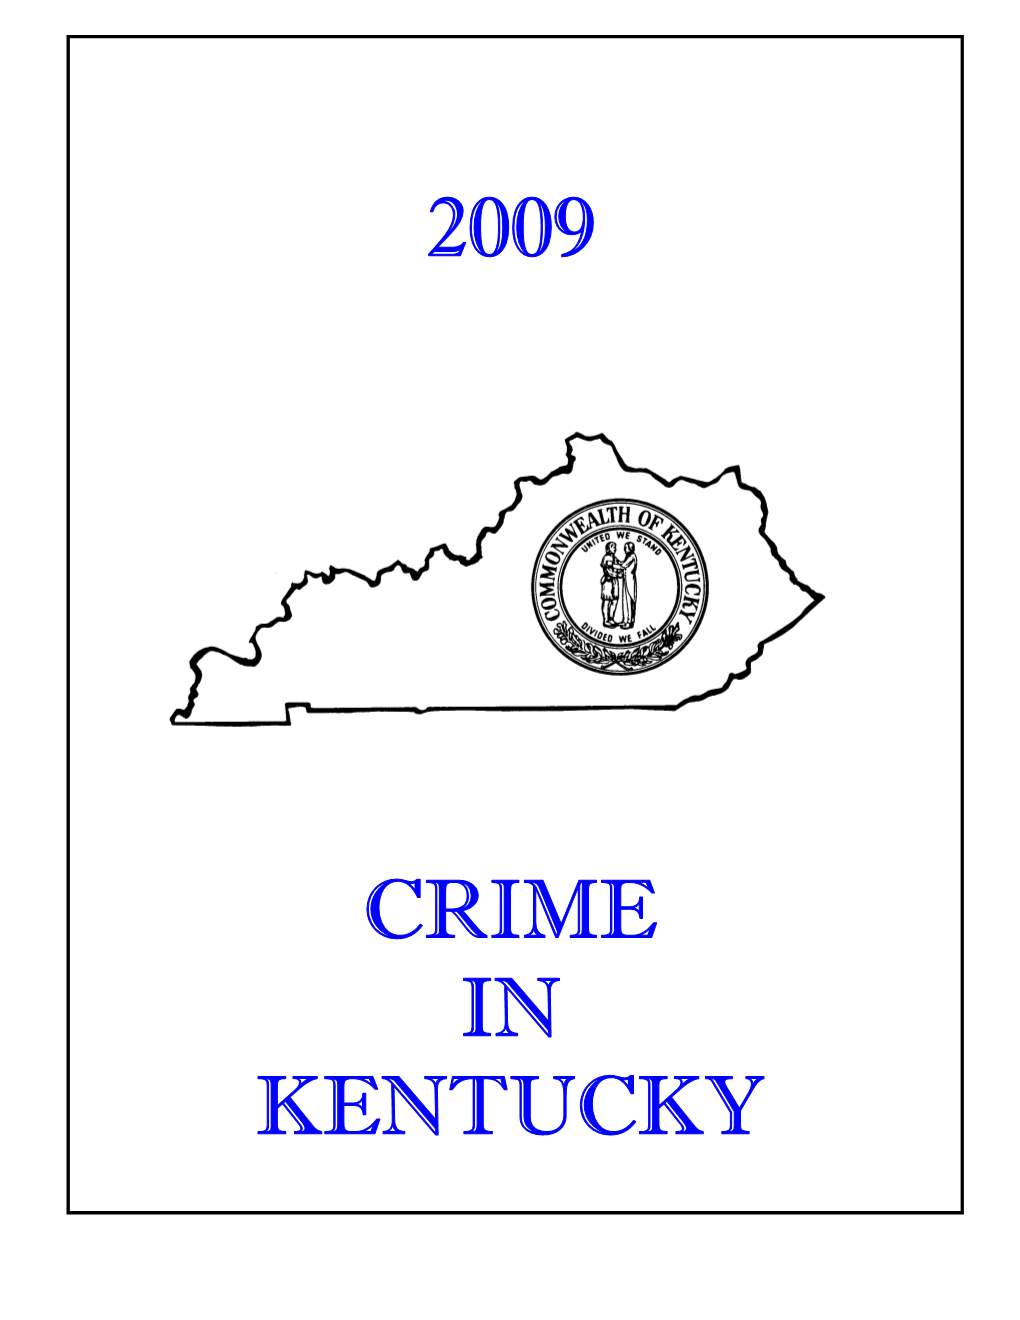 Crime in Kentucky Recipient